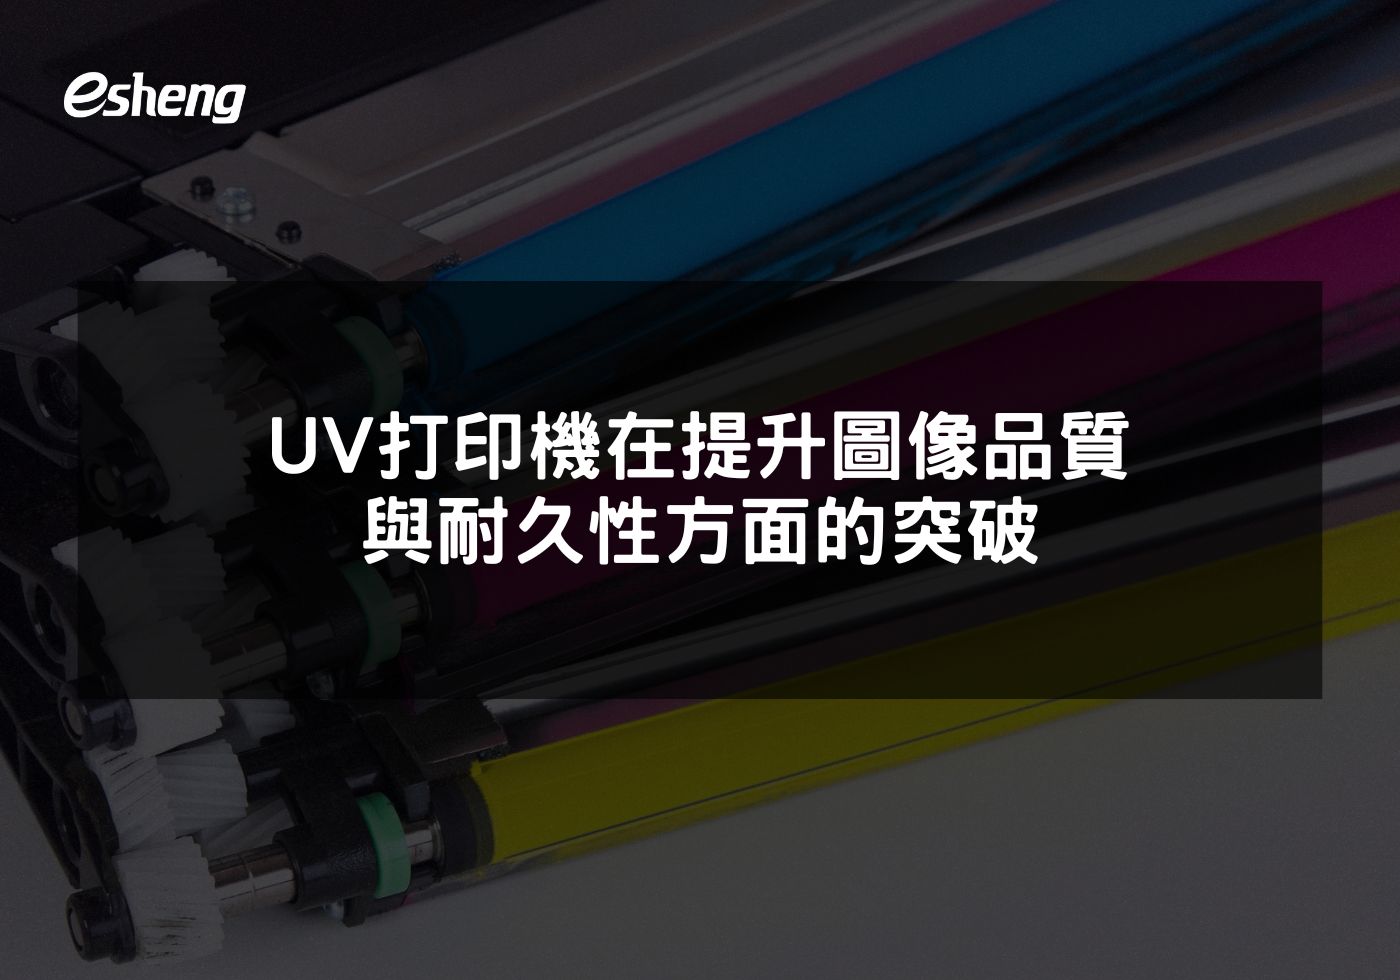 您目前正在查看 UV打印機在提升圖像品質與耐久性方面的突破